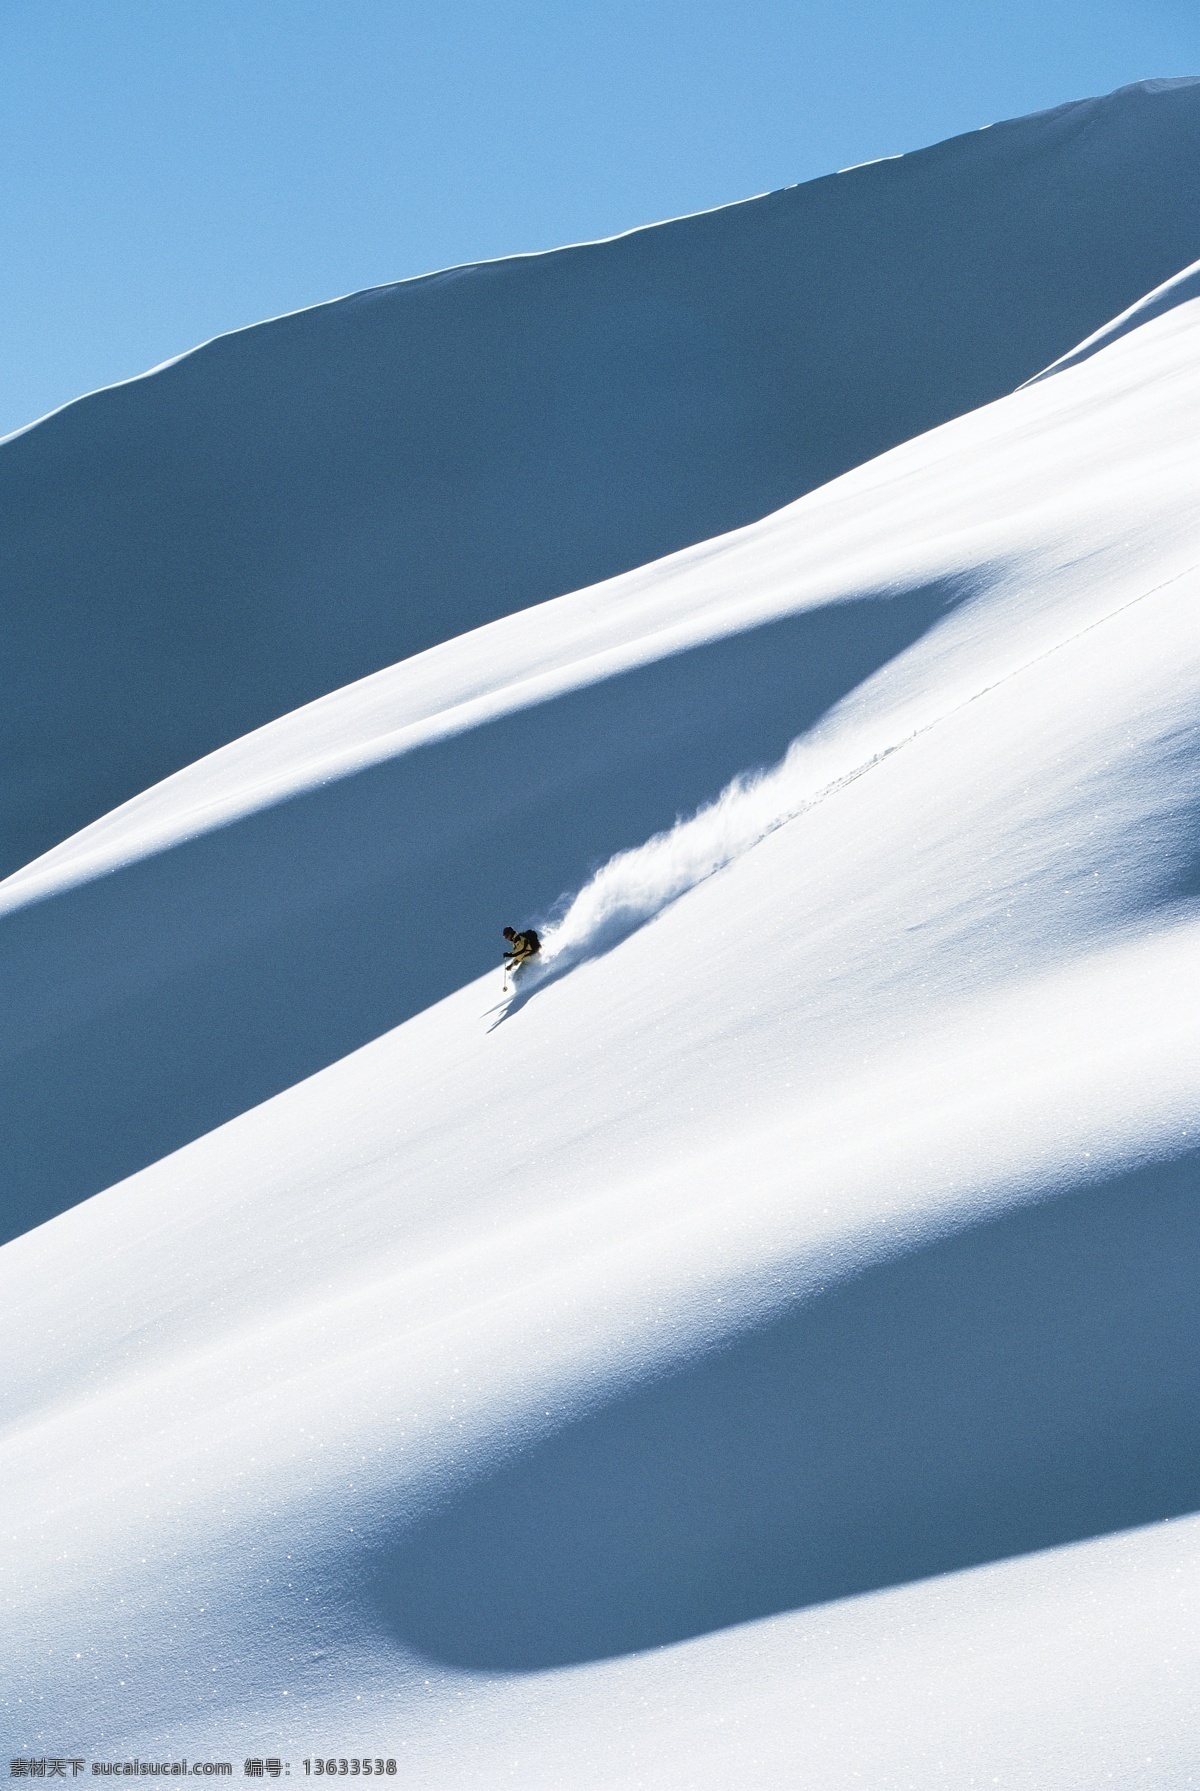 飞速 下滑 滑雪 运动员 高清 冬天 雪地运动 划雪运动 极限运动 体育项目 速度 运动图片 生活百科 雪山 风景 摄影图片 高清图片 体育运动 白色